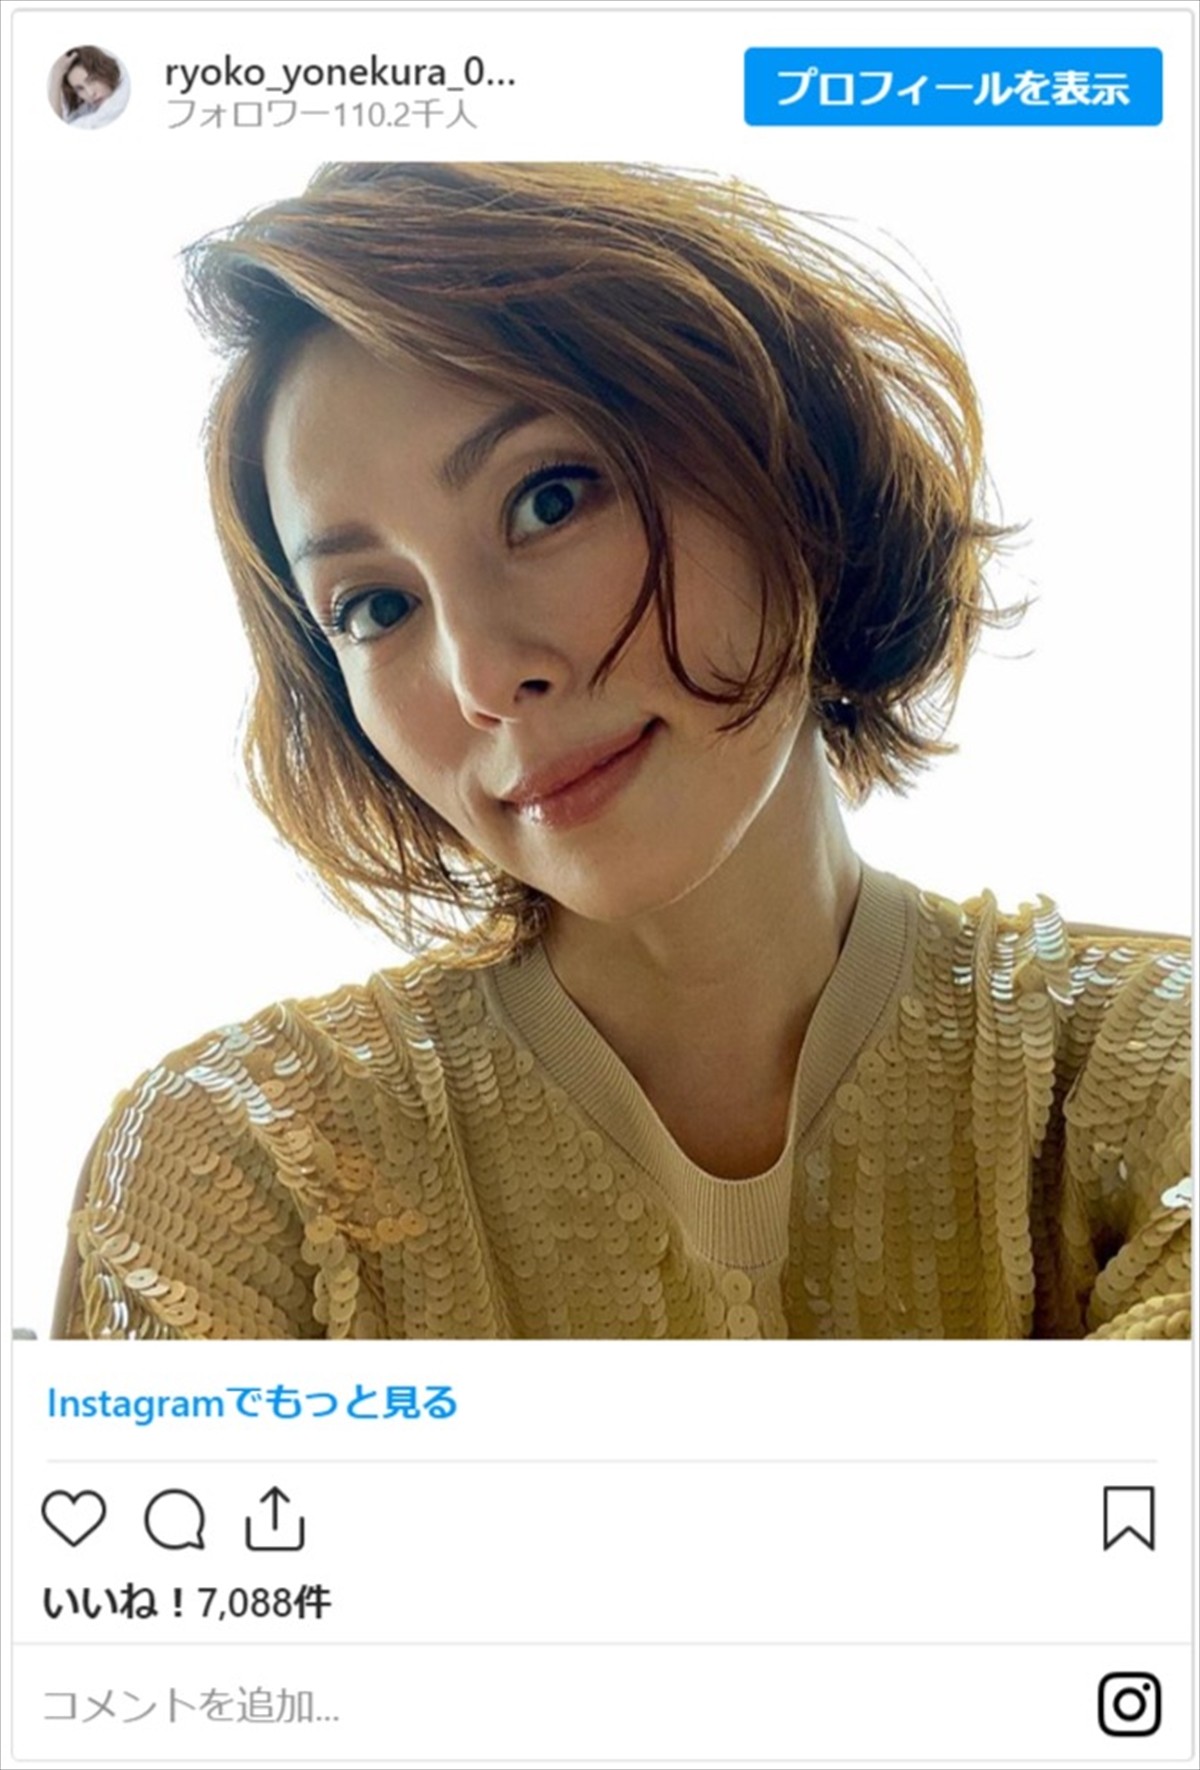 米倉涼子、珍しい自撮りショットに反響  「めちゃくちゃレア」「美しすぎます」